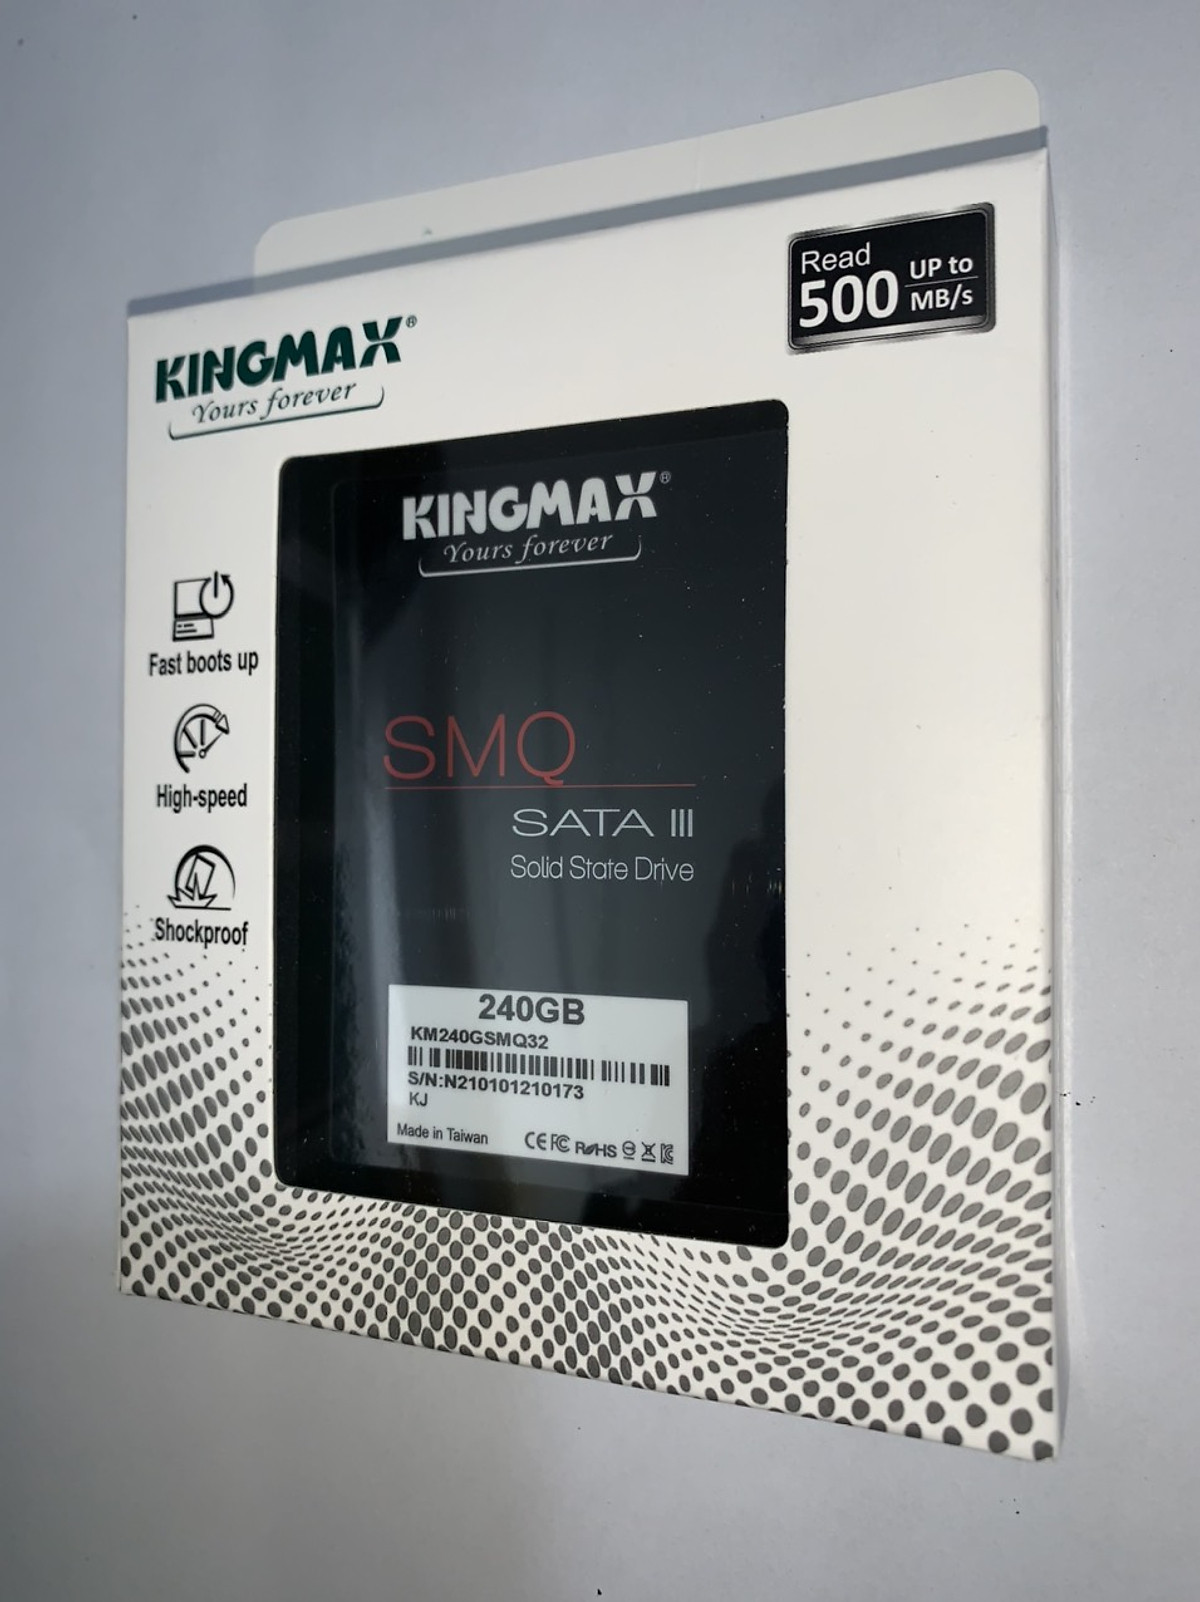 Mua Ổ Cứng SSD KINGMAX SMQ 240GB (2.5 inch SATA III, R/W 540/450 MB/s) -  Hàng Chính Hãng - 240GB - 2.5 inch tại Vi Tính Lê Huy